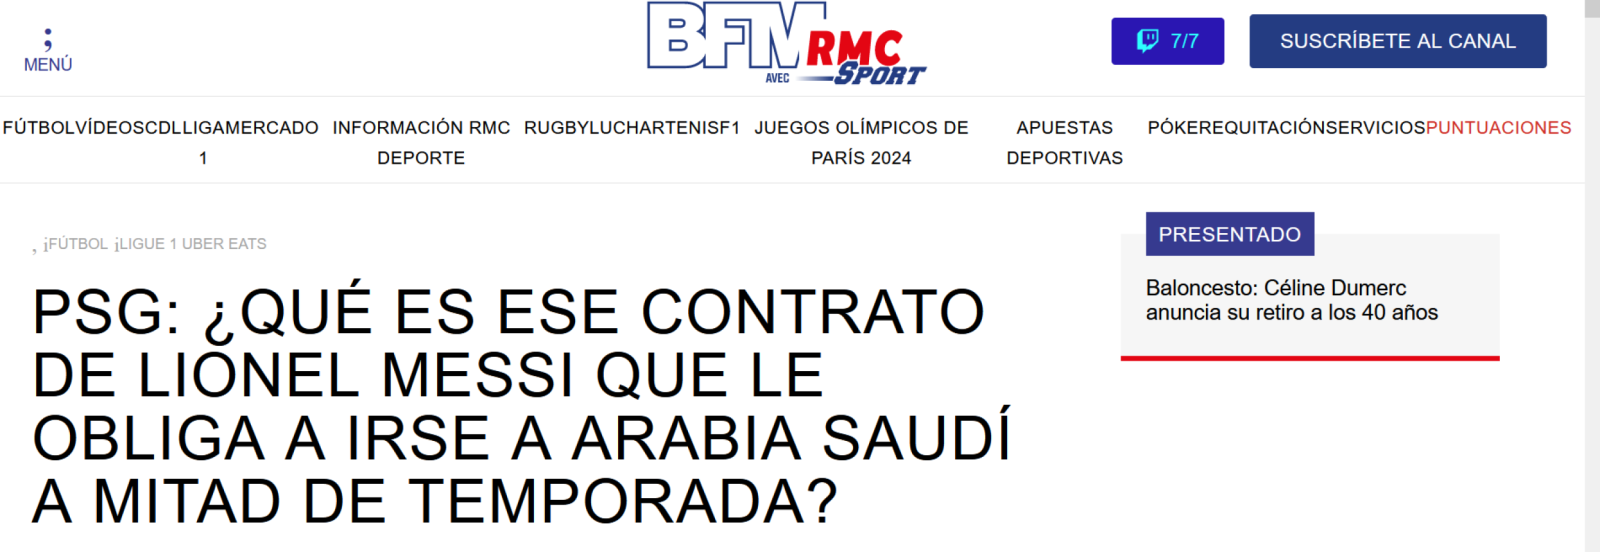 Imagen RMC Sports pone la lupa en el conrato de Mesi con Arabia Saudita.